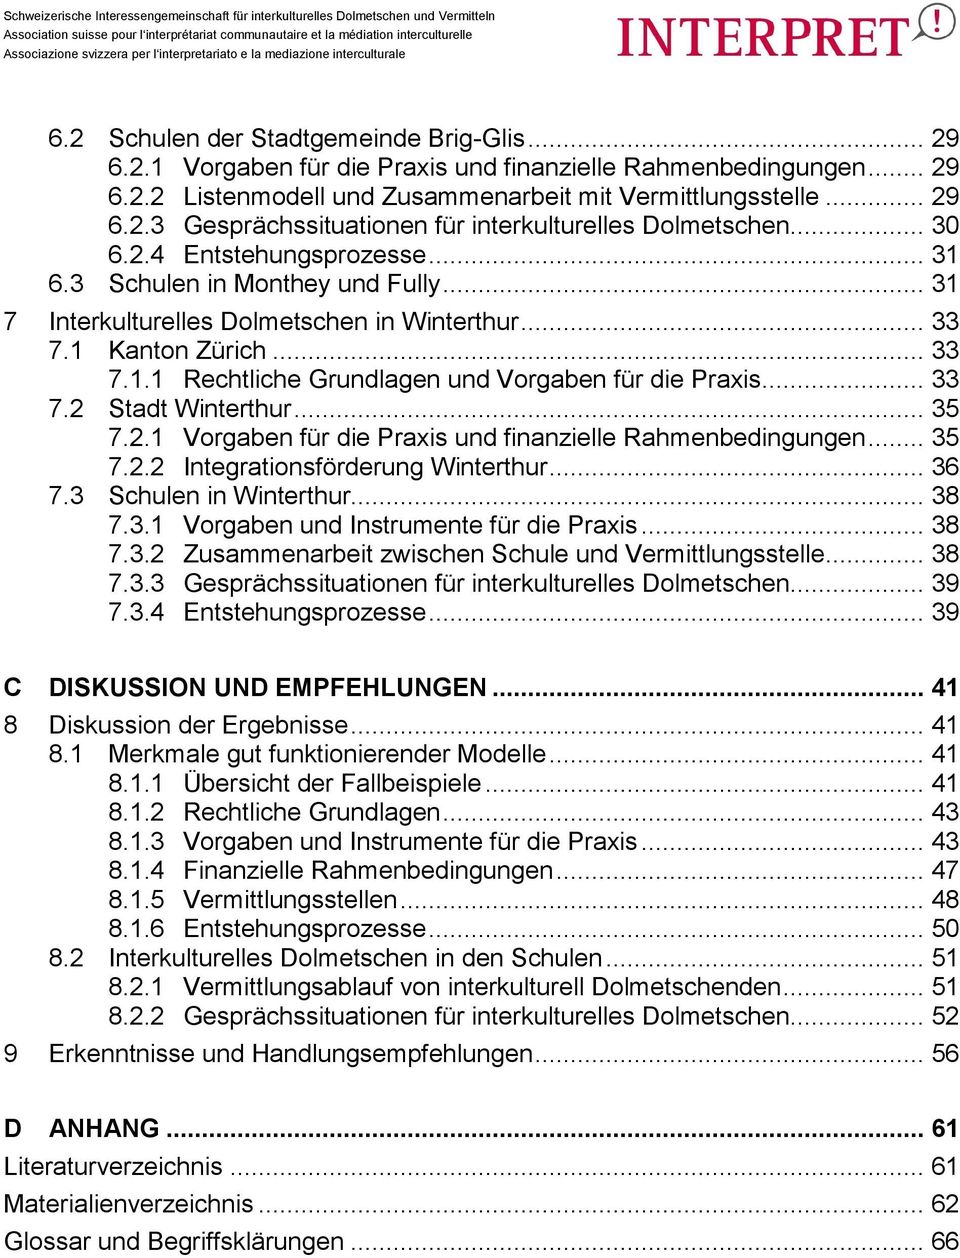 .. 33 7.2 Stadt Winterthur... 35 7.2.1 Vorgaben für die Praxis und finanzielle Rahmenbedingungen... 35 7.2.2 Integrationsförderung Winterthur... 36 7.3 Schulen in Winterthur... 38 7.3.1 Vorgaben und Instrumente für die Praxis.